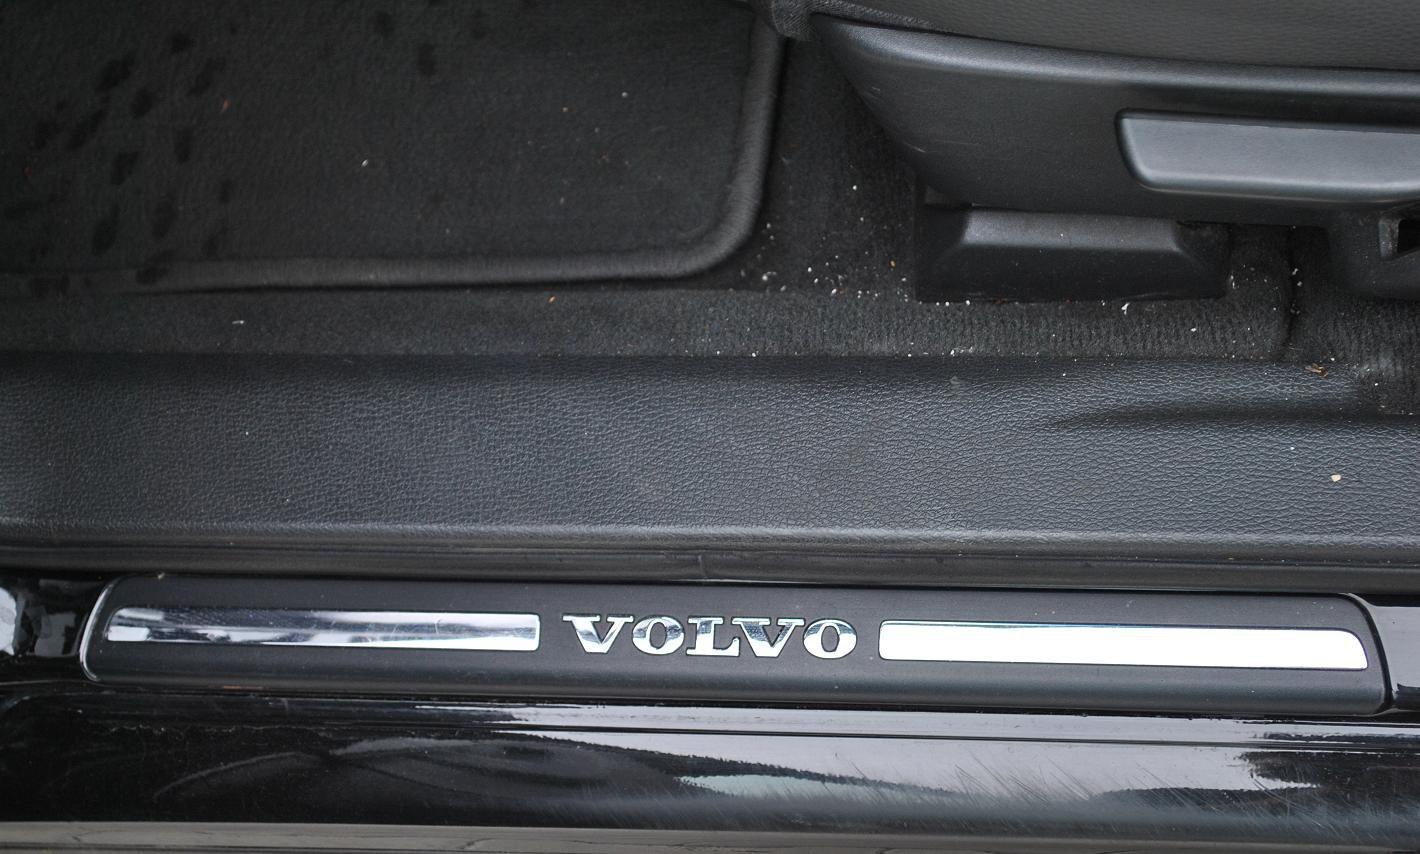 Volvo V70 2.4 T5 (2005)